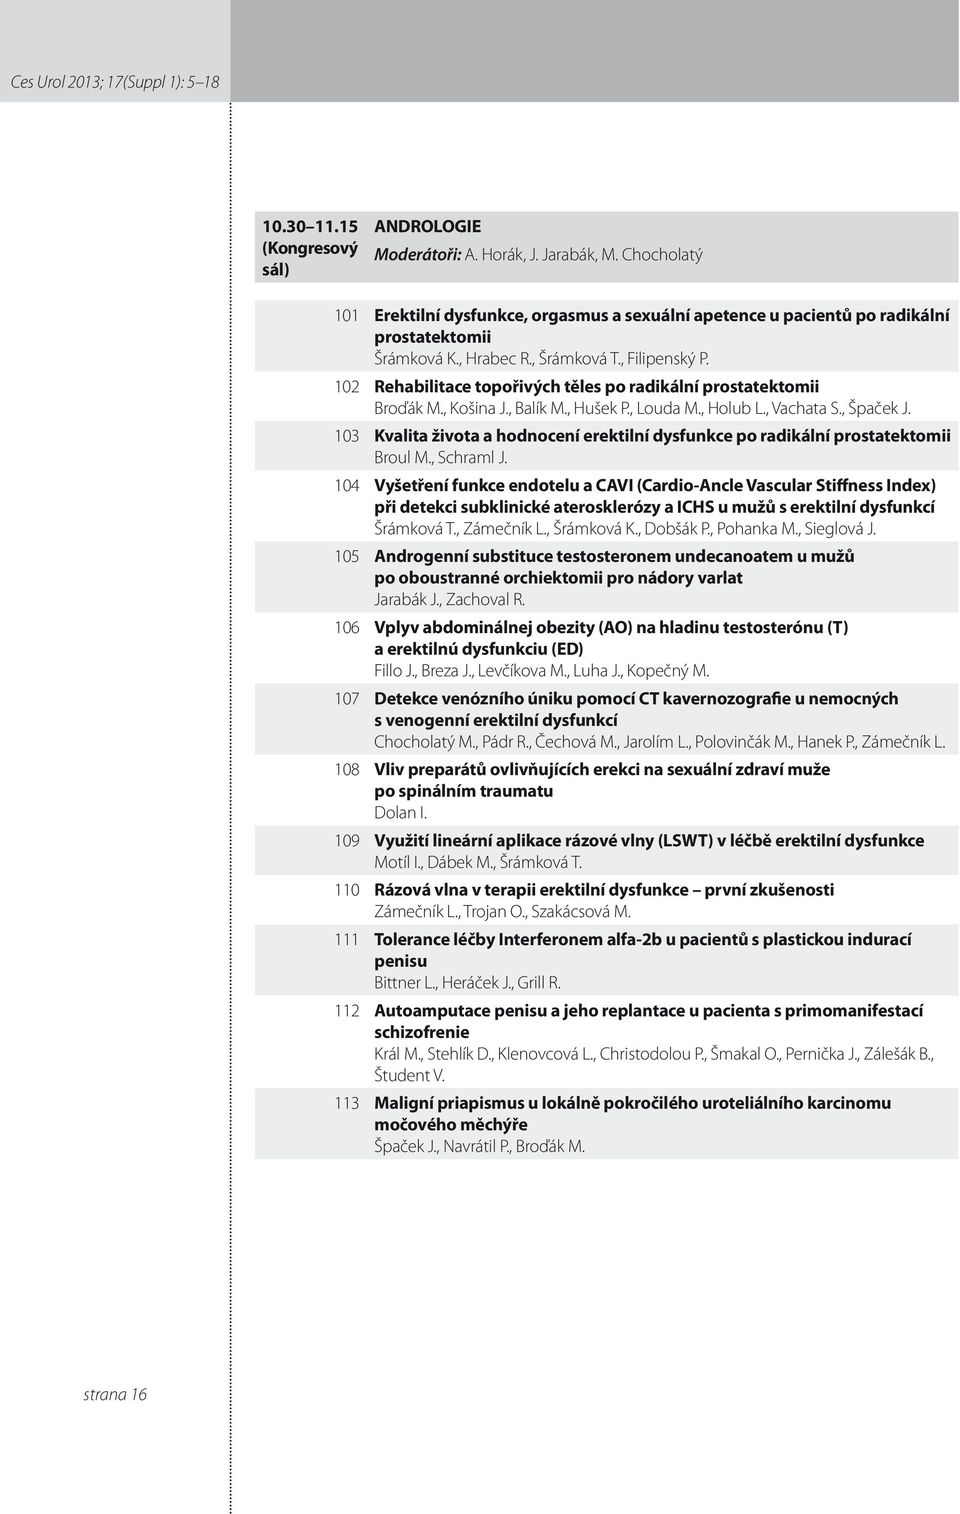 0 Rehabilitace topořivých těles po radikální prostatektomii Broďák M., Košina J., Balík M., Hušek P., Louda M., Holub L., Vachata S., Špaček J.